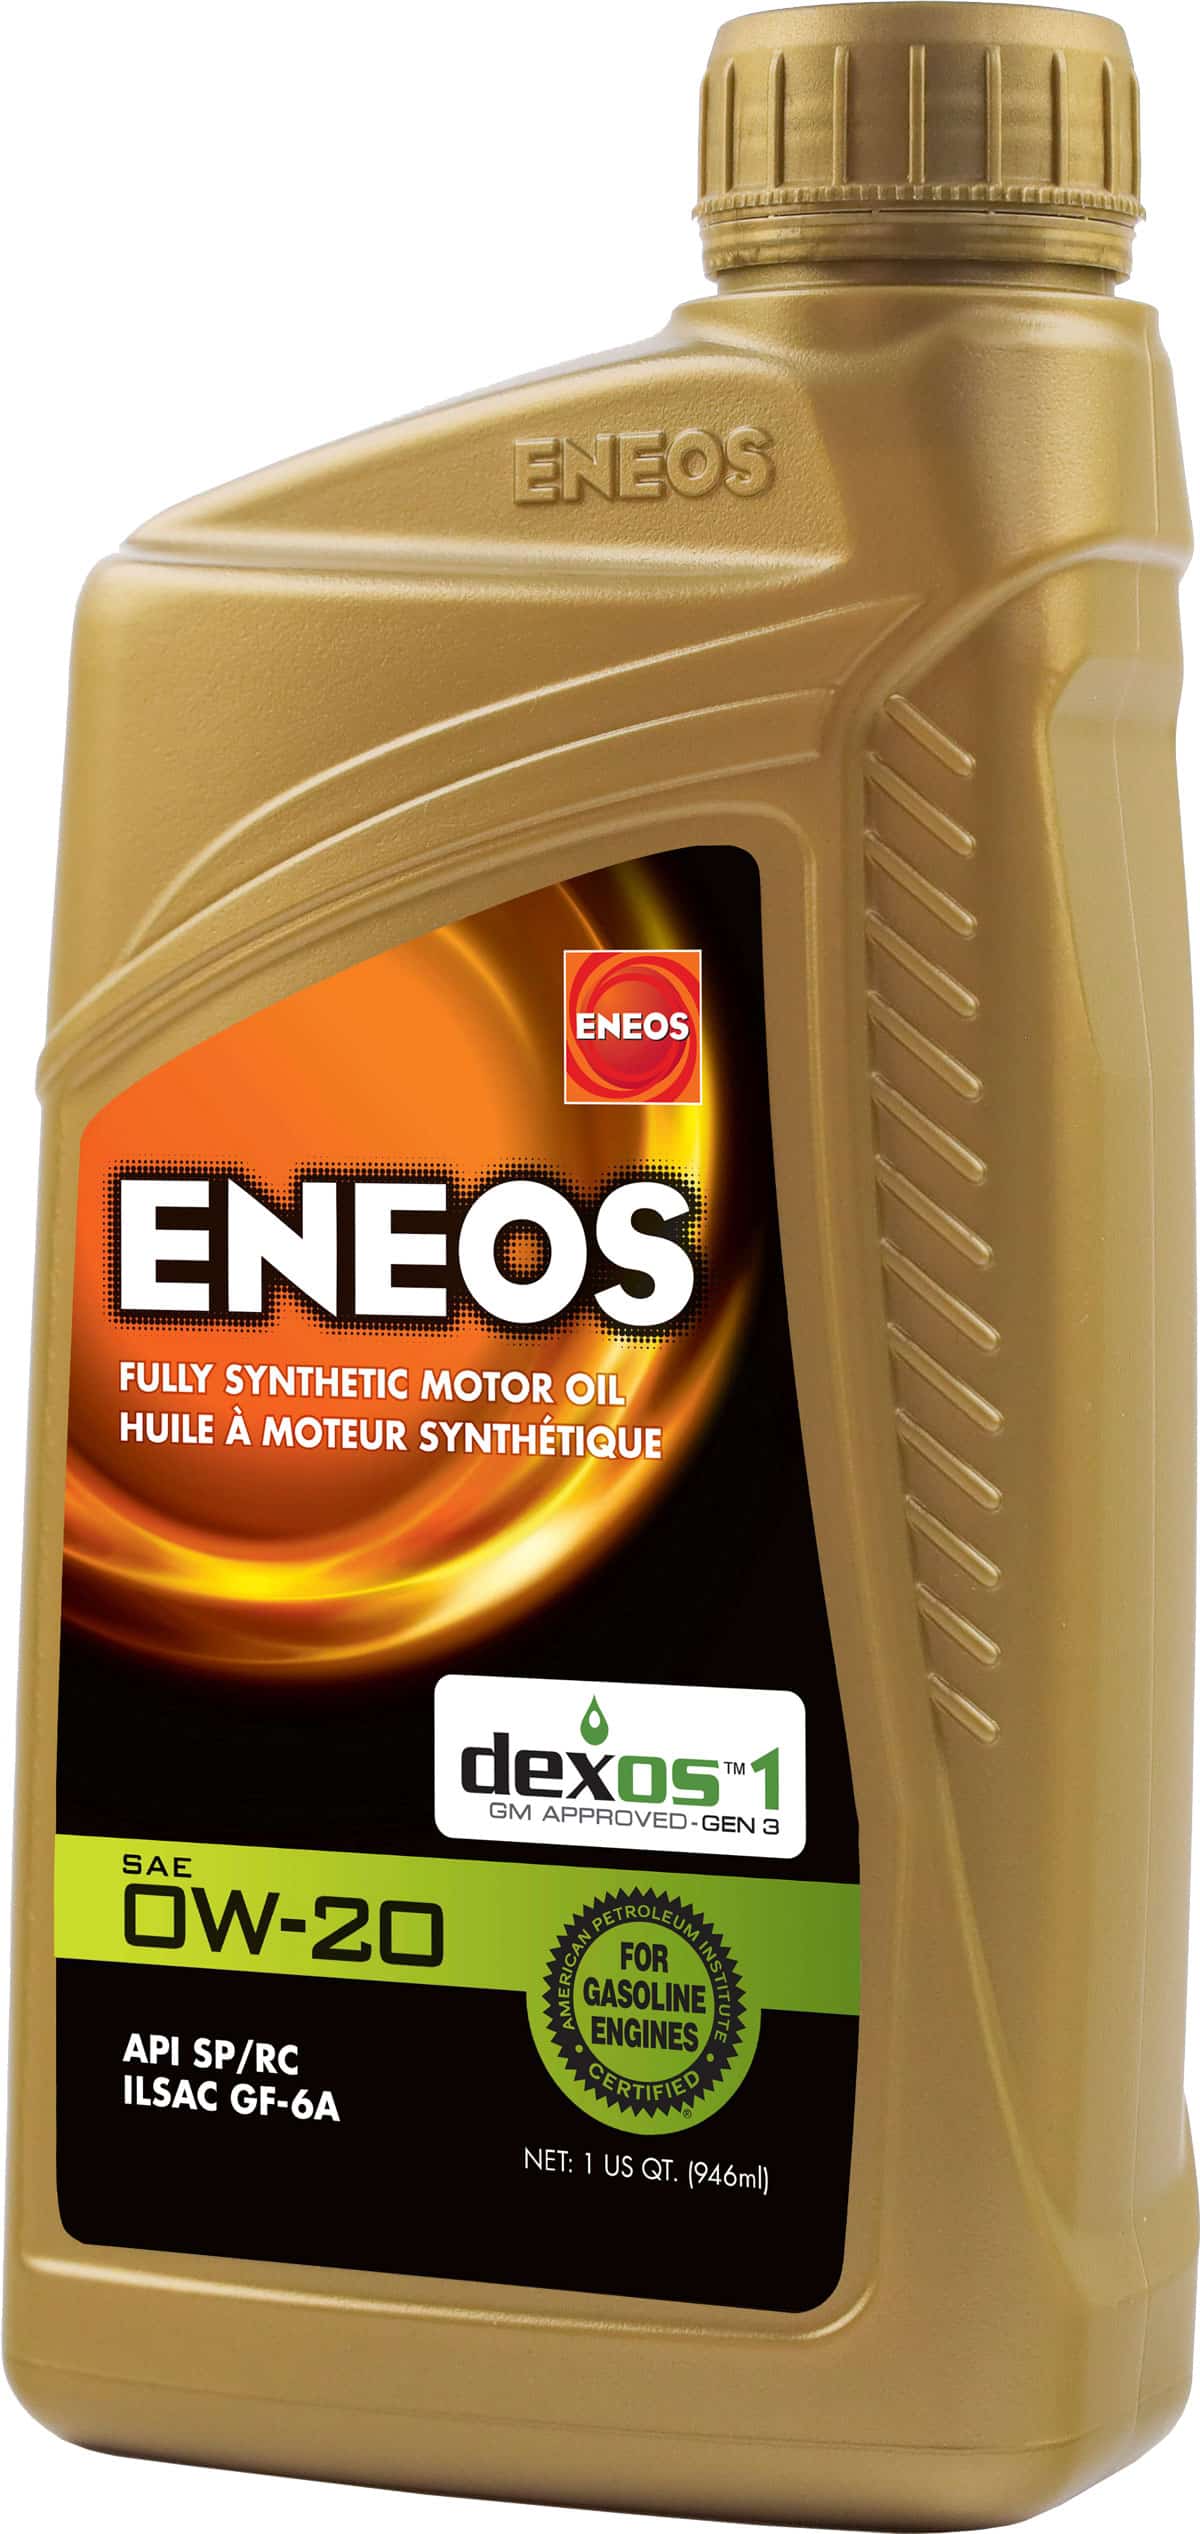 ENEOS 0W-20 synthetic oil